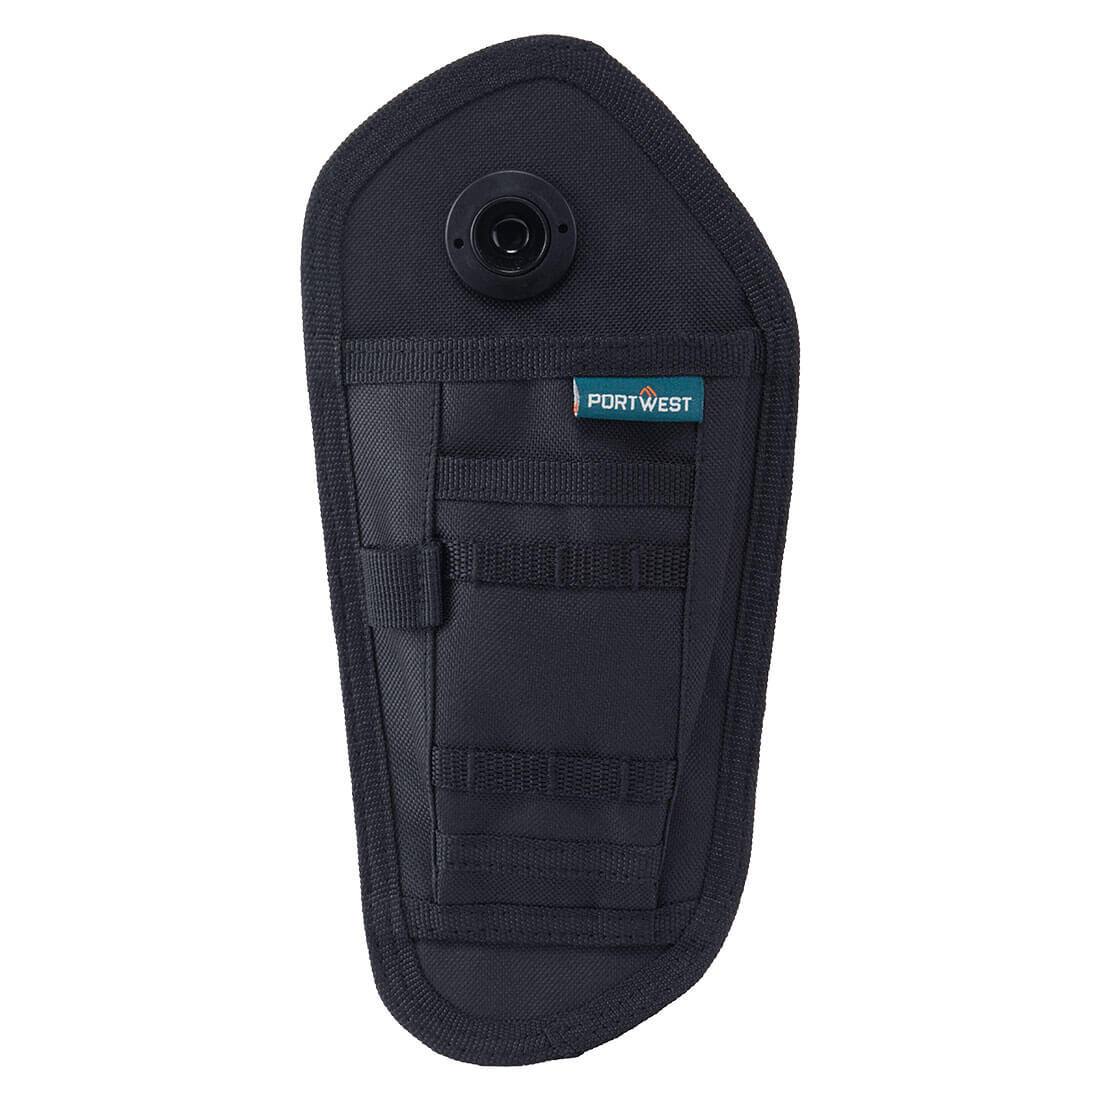 Buzunar pentru cutit pentru, pantalonii modulari BX321 - Imbracaminte de protectie